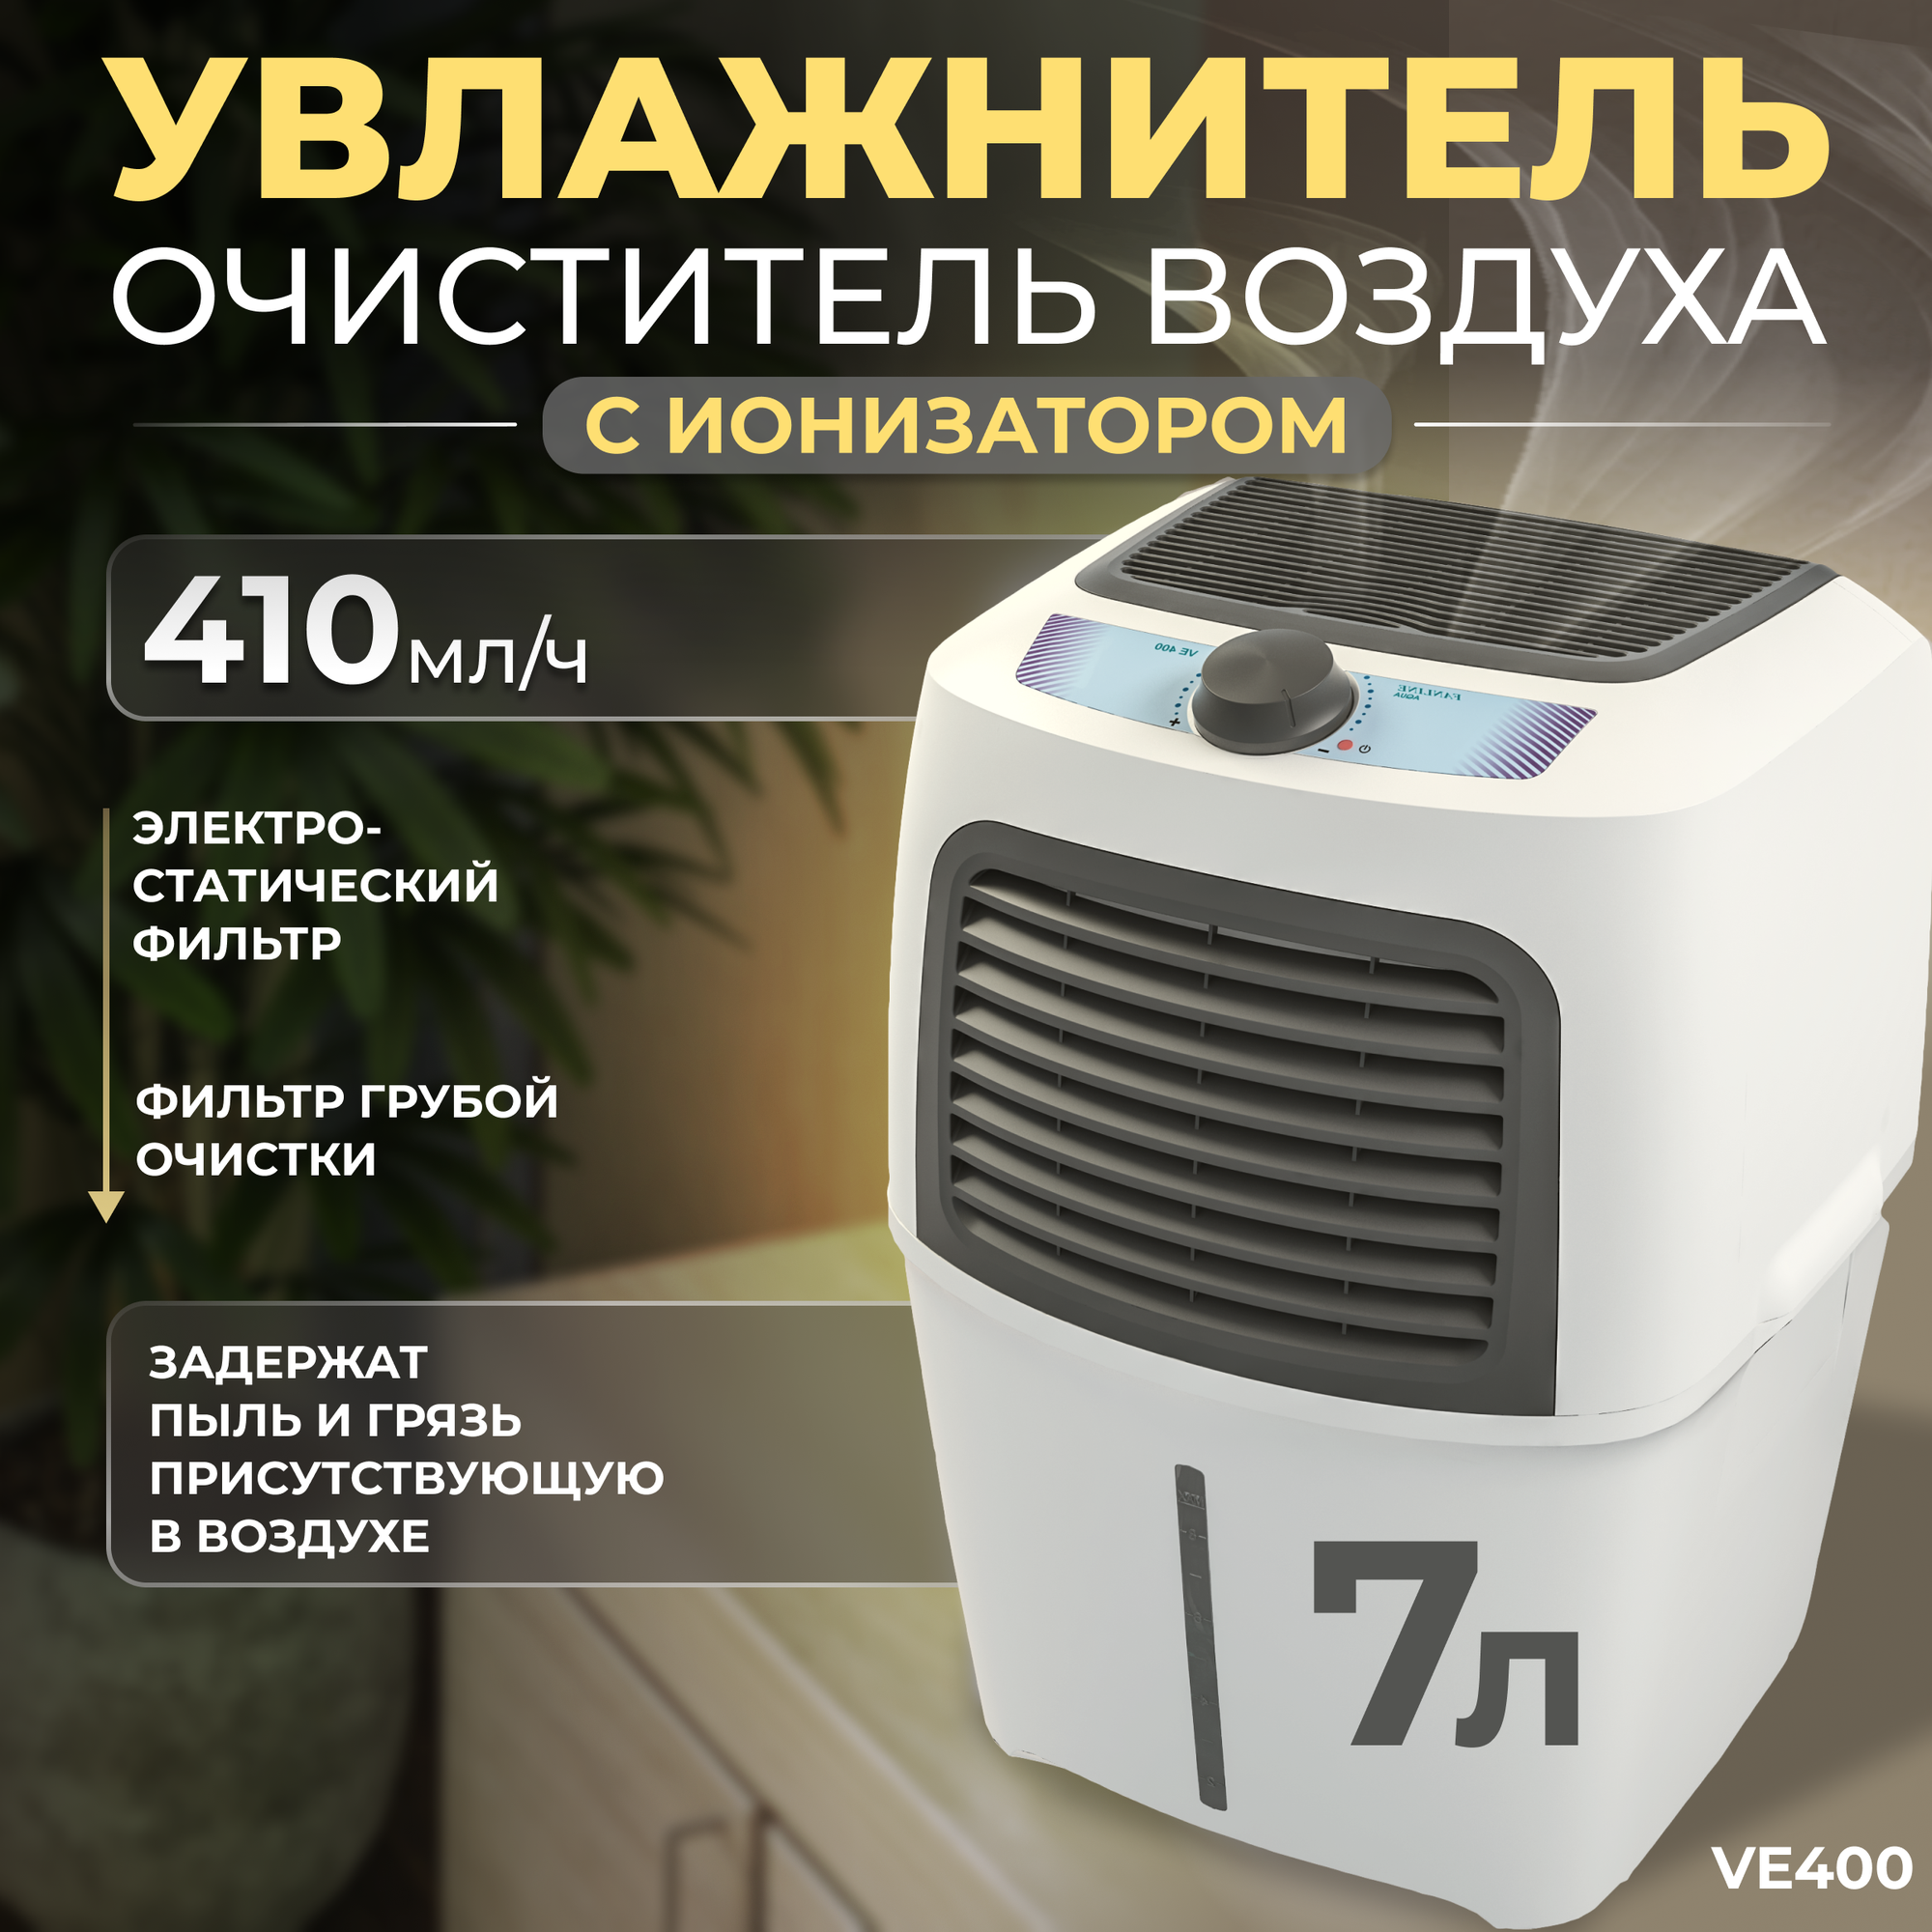 Увлажнитель воздуха с функцией ароматизации Fanline VE400